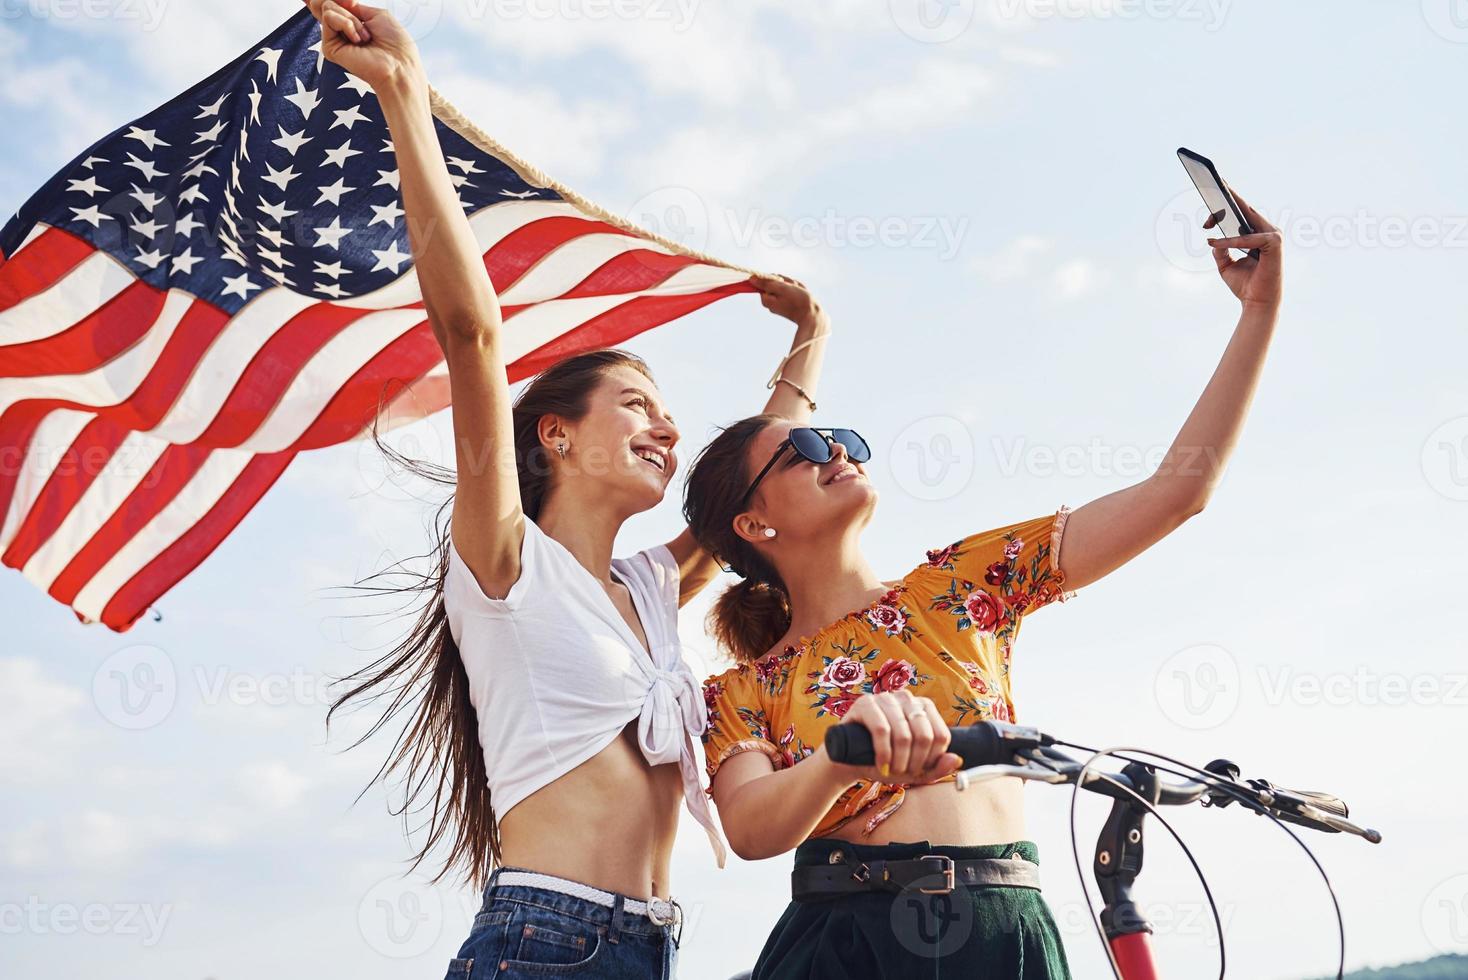 contra o céu nublado. duas mulheres alegres patrióticas com bicicleta e bandeira dos eua nas mãos fazem selfie foto